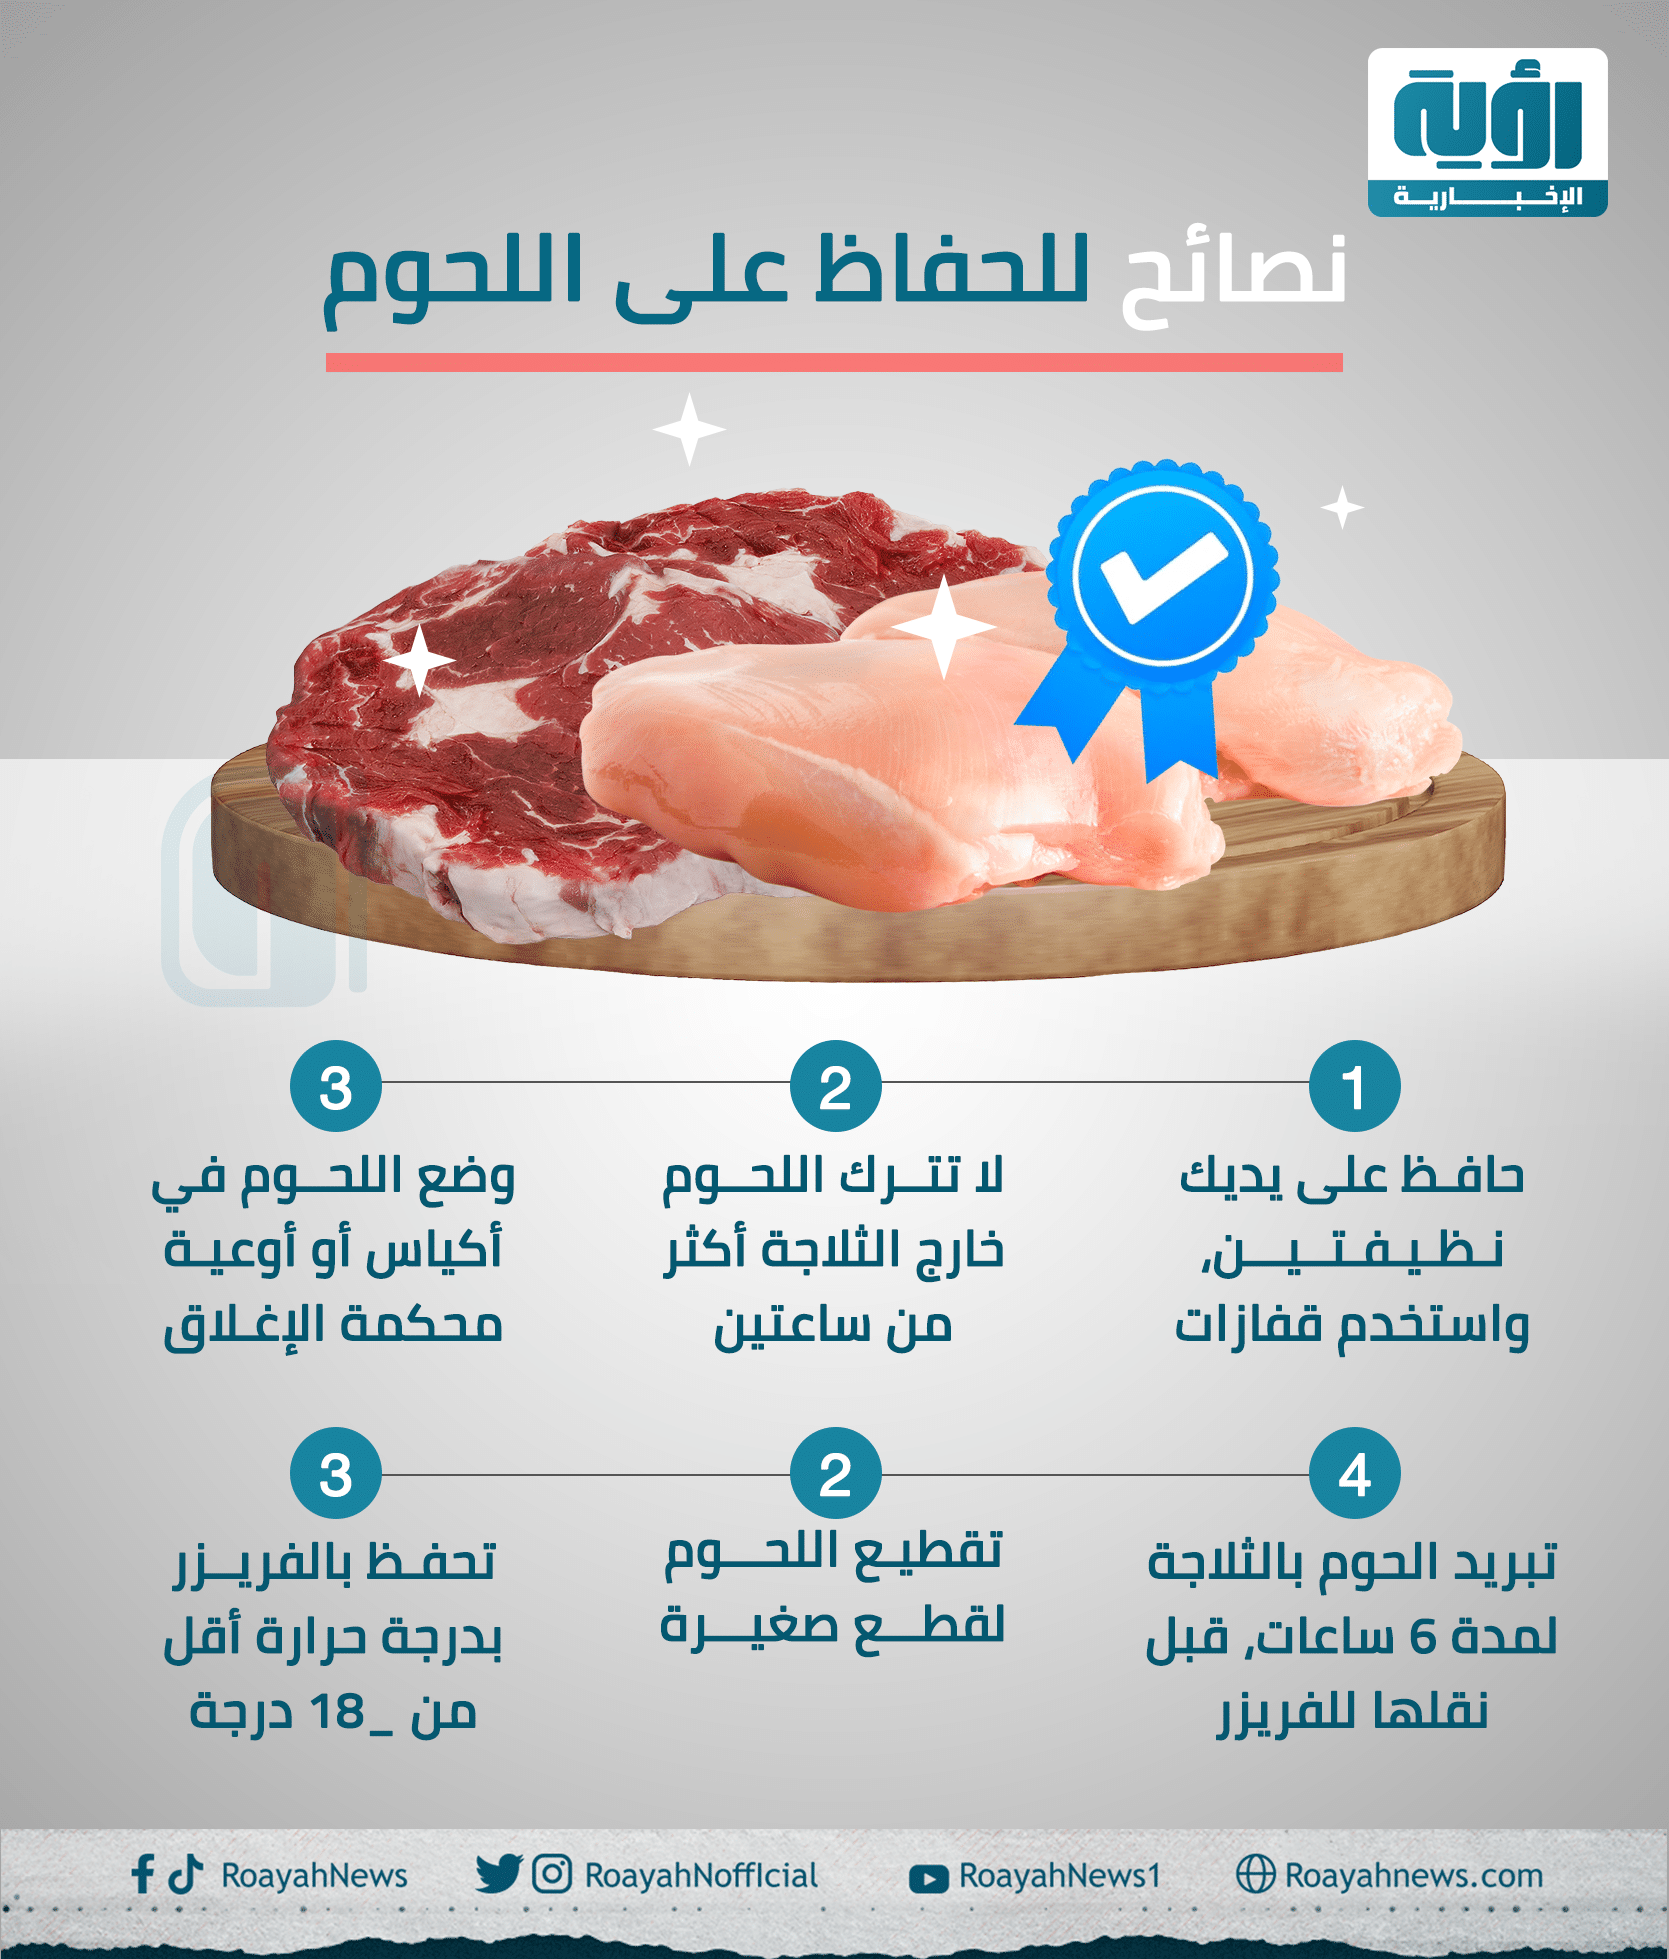 نصائح للحفاظ على اللحوم 1